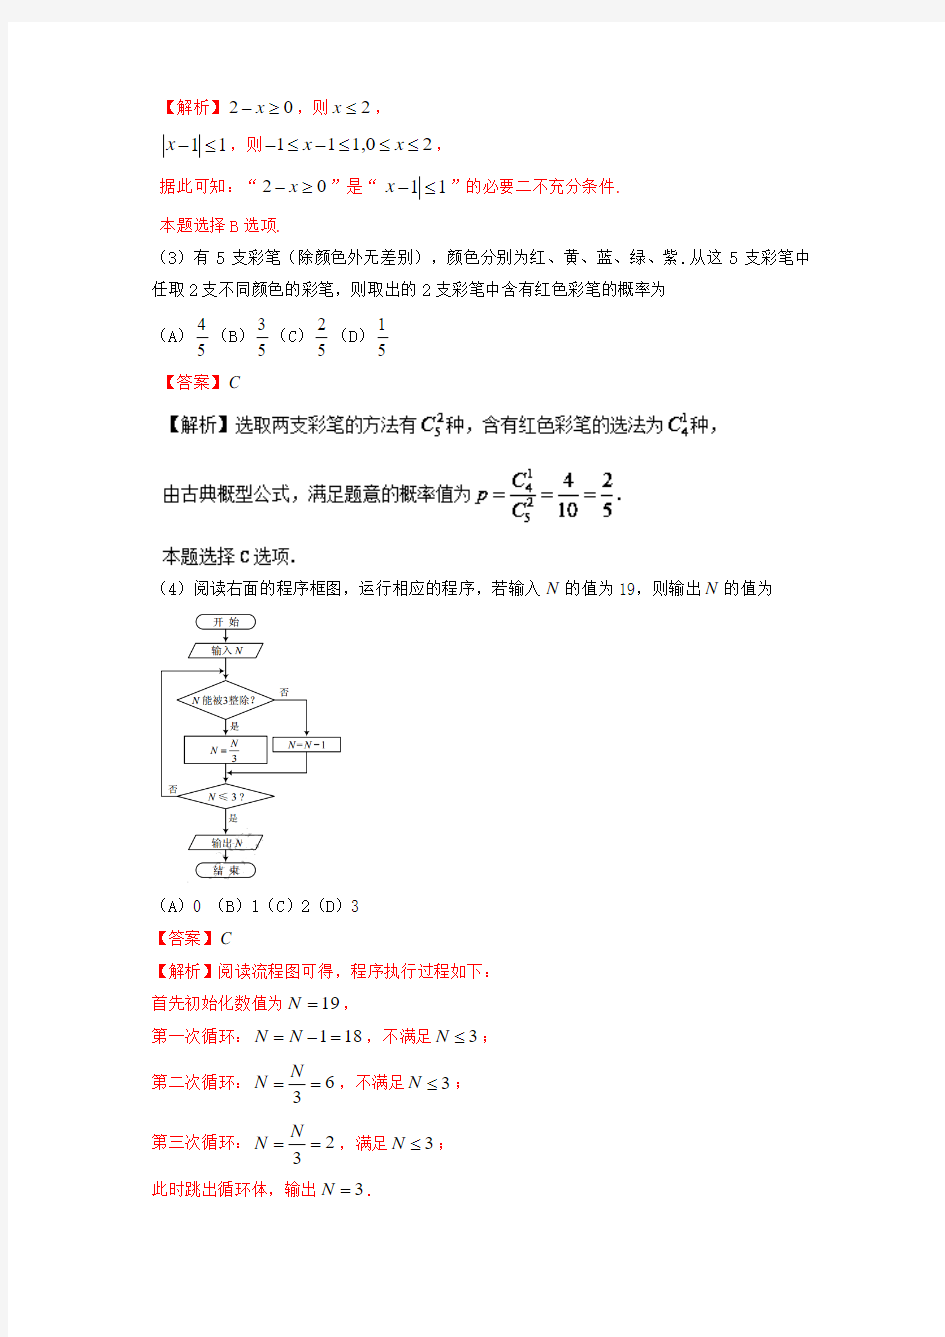 2017年高考真题——数学(文)(天津卷) Word版含解析